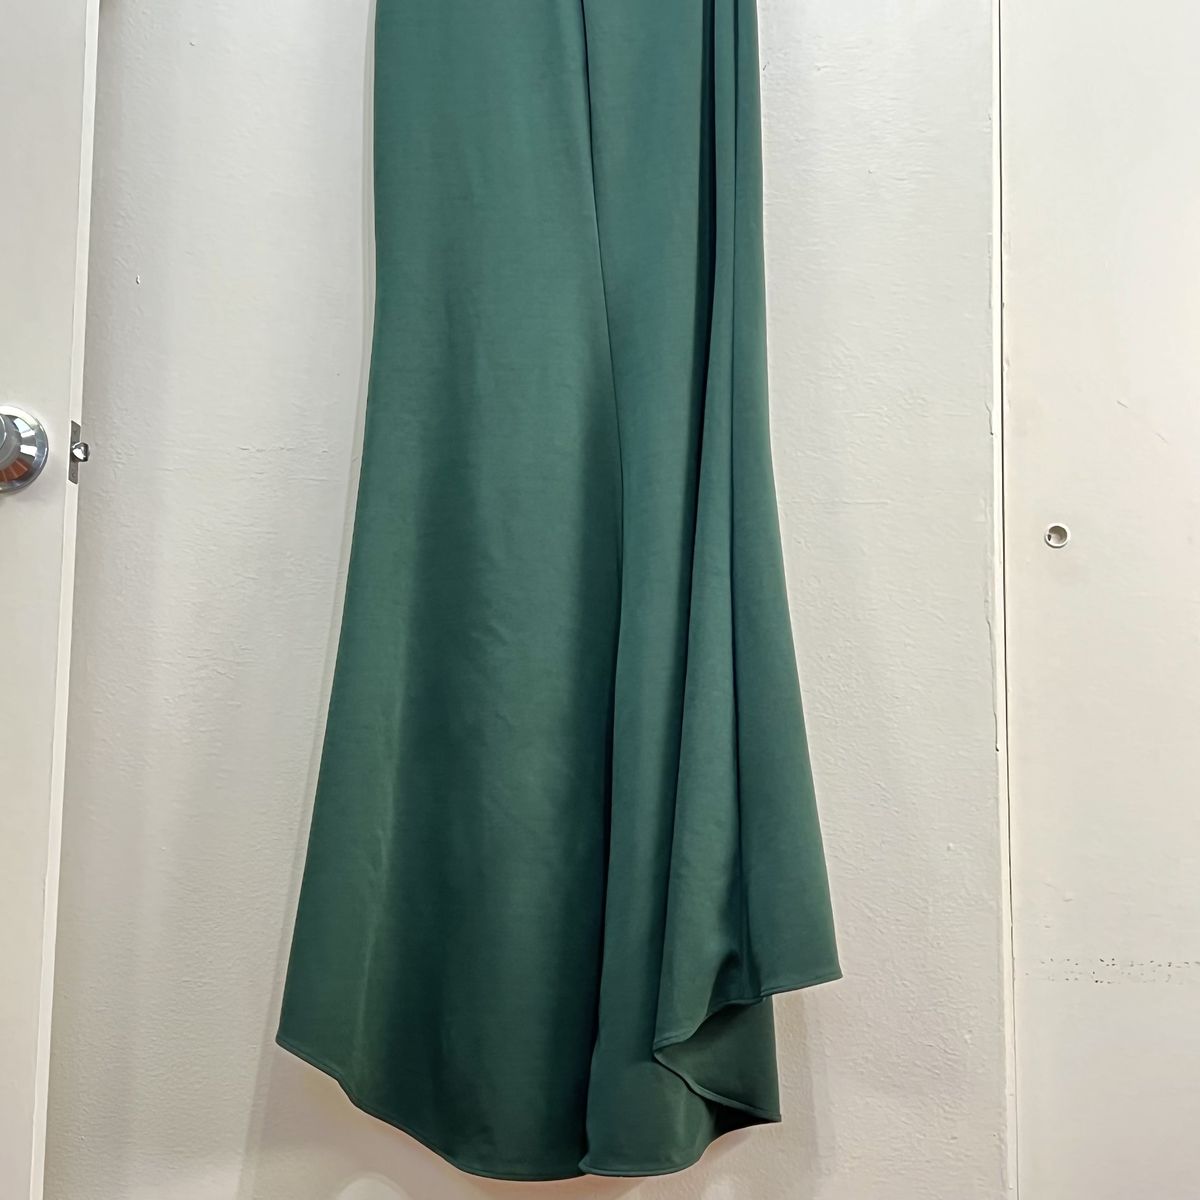 Style 28176 La Femme Size 8 One Shoulder Emerald Green Side Slit Dress on Queenly